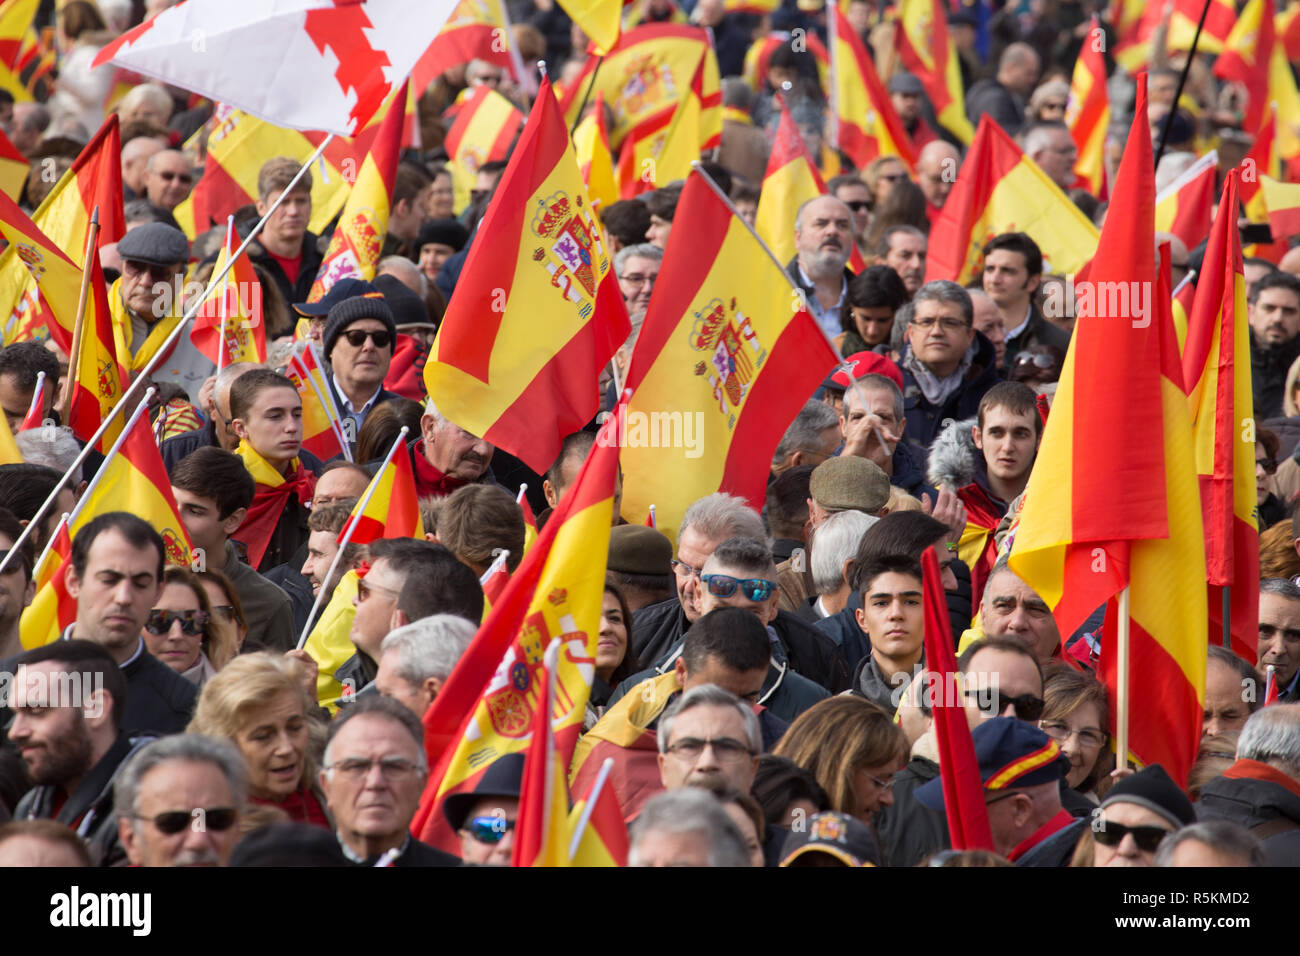 Die Demonstranten werden gesehen Holding spanische Flaggen während des Protestes. Tausende von Menschen mit zahlreichen Fahnen Spanien beteiligen sich an der Demonstration in Madrid von Denaes und die Spanien Viva Stiftung zur Verteidigung der Institutionen, die Einheit Spaniens und gegen die Straflosigkeit der coup Plotters. Stockfoto